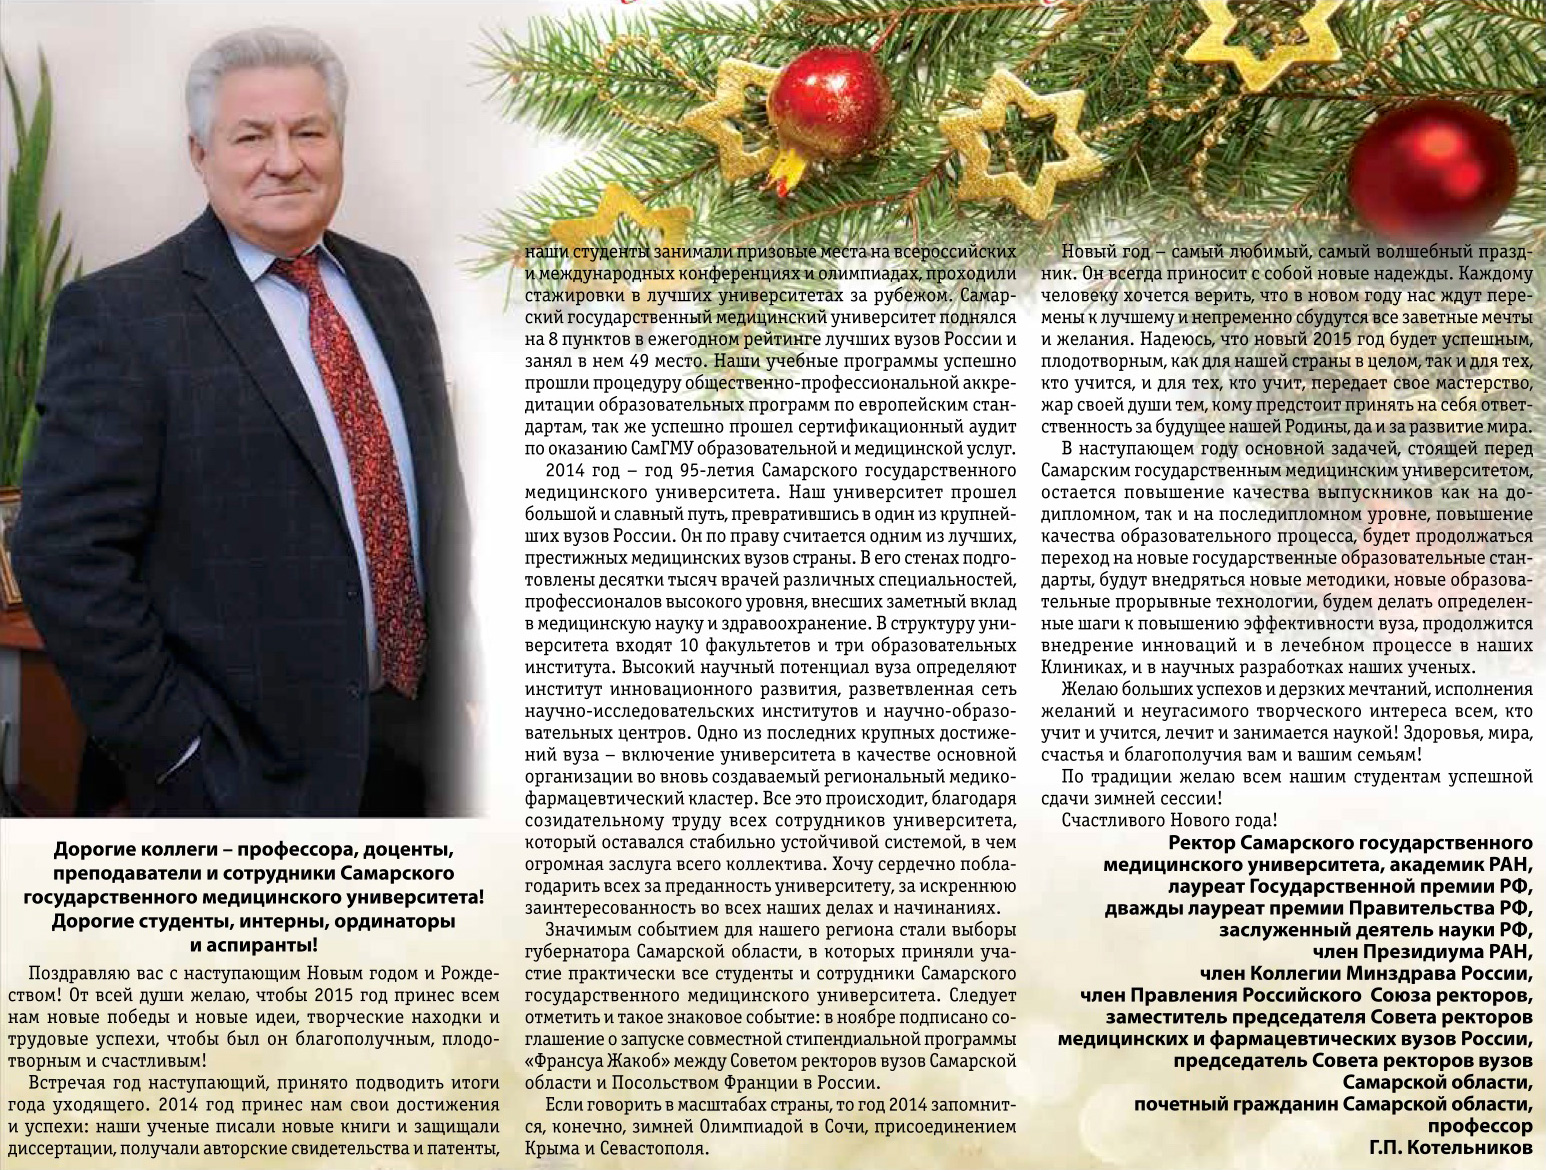 Новогоднее Поздравление Губернатора Самарской Области